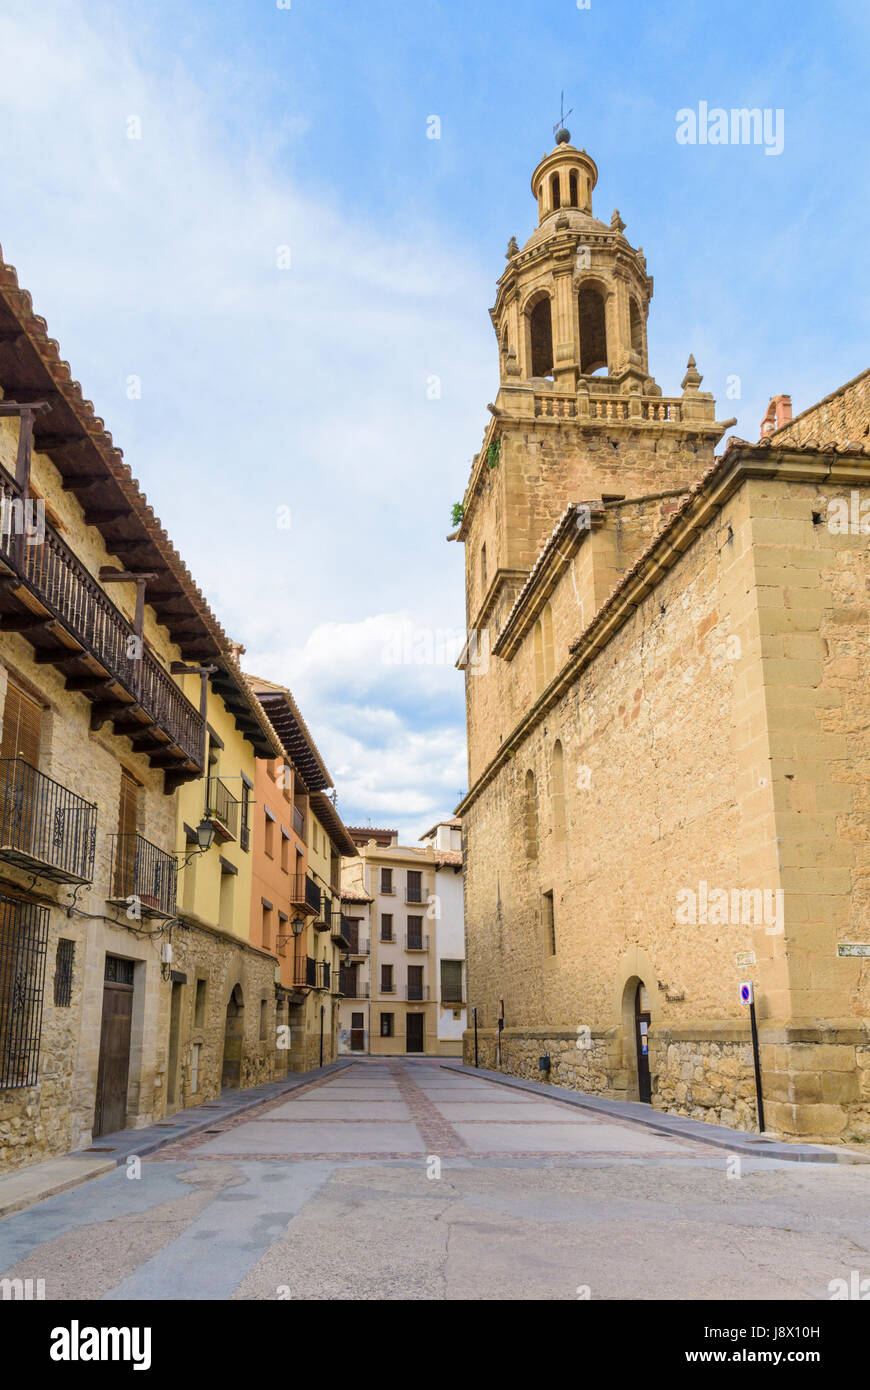 The 17th century former collegiate of Santa María la Mayor in the old town of Rubielos de Mora in the Gúdar-Javalambre region, Teruel, Aragon, Spain Stock Photo